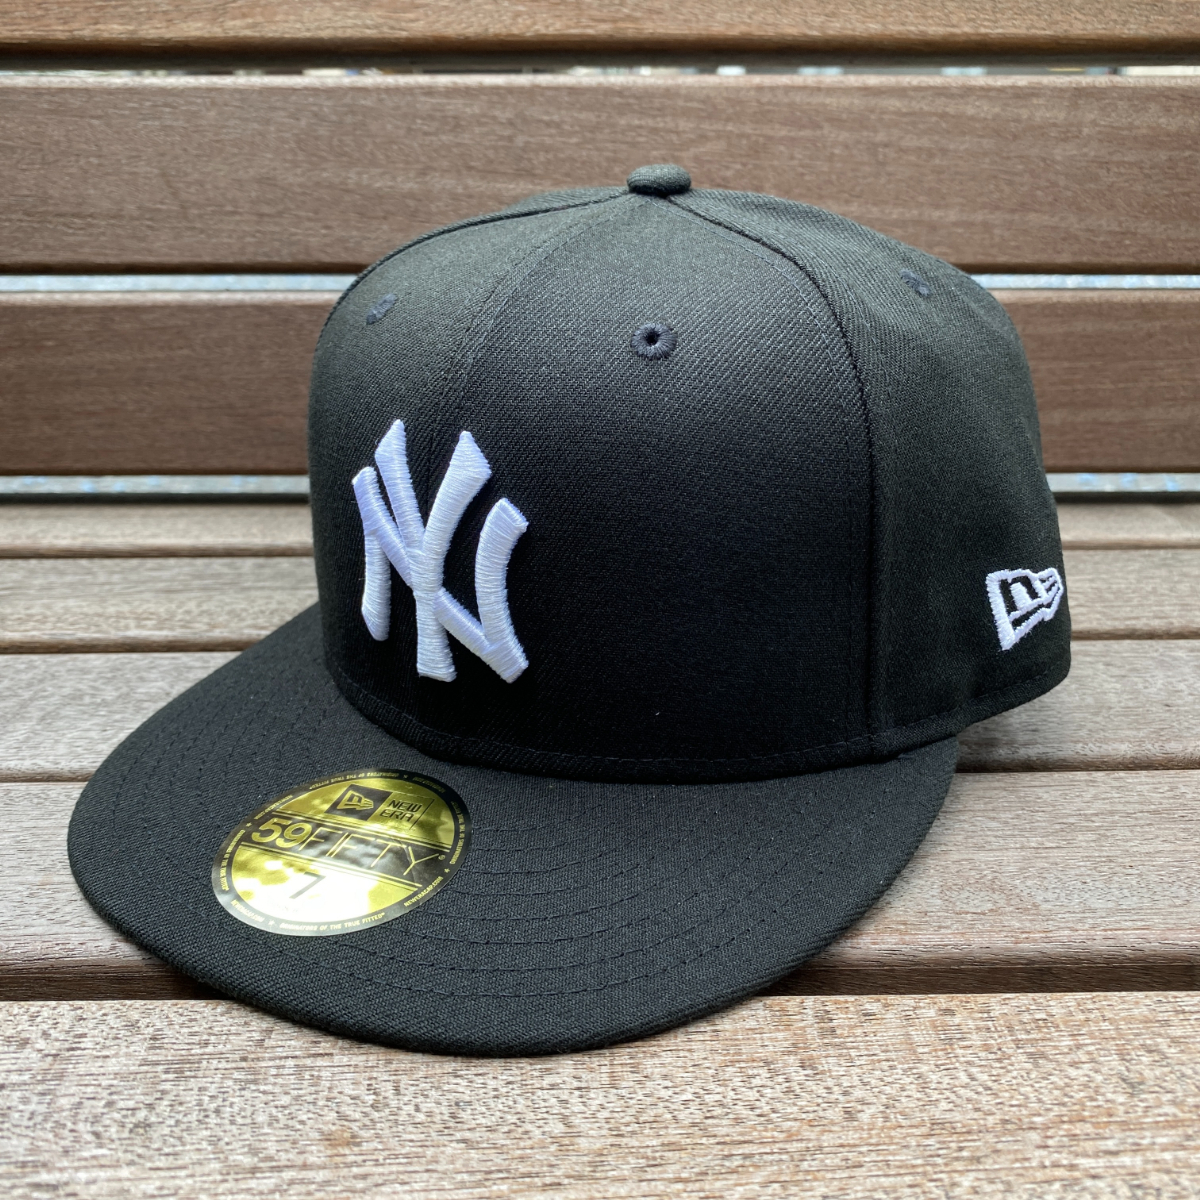 USA正規品 【7.1/8】 NEWERA ニューエラ MLB ニューヨーク ヤンキース NY Yankees 特別色 ブラックエディション 59FIFTY メジャーリーグ